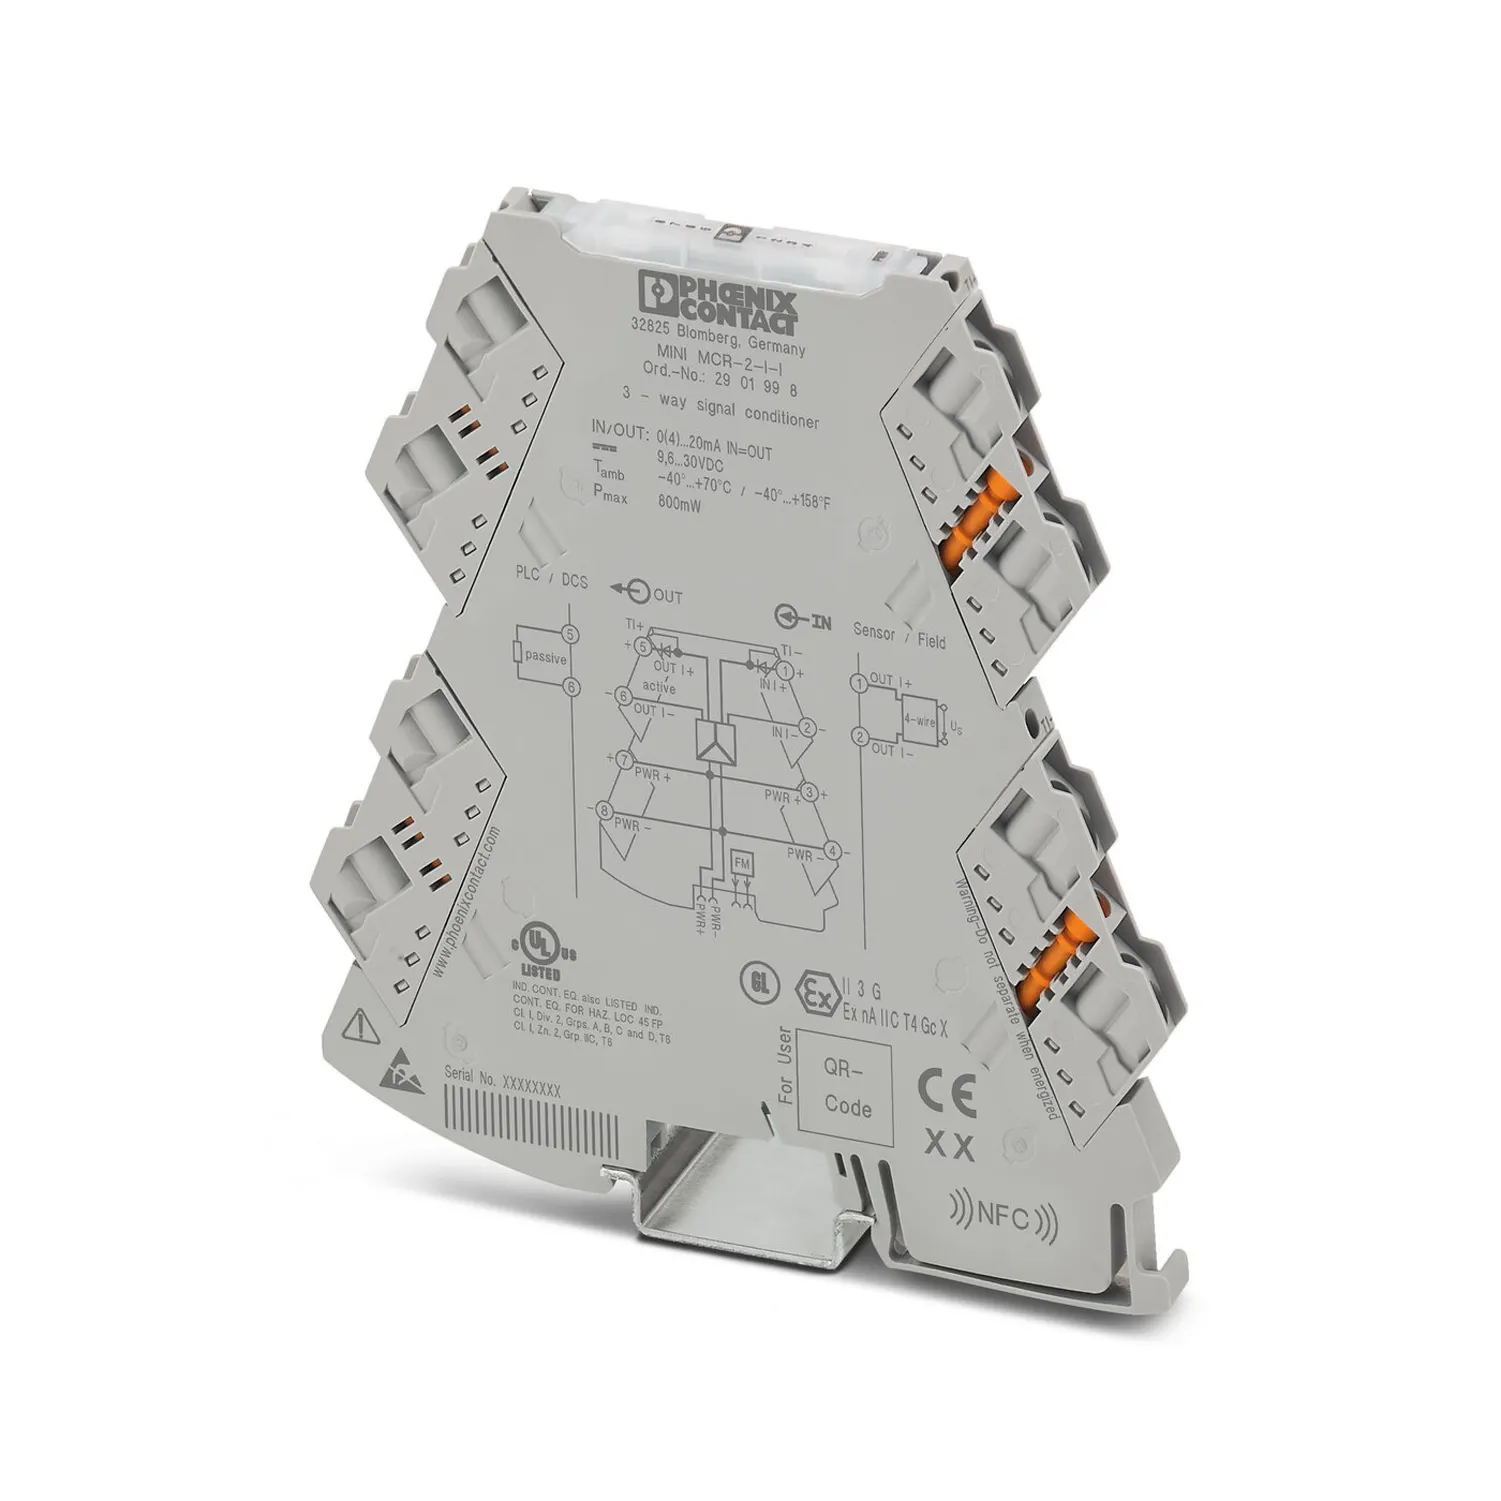 Мини-MCR-2-I-I-сигнальный кондиционер Phoenix 2901998 для стандартных применений